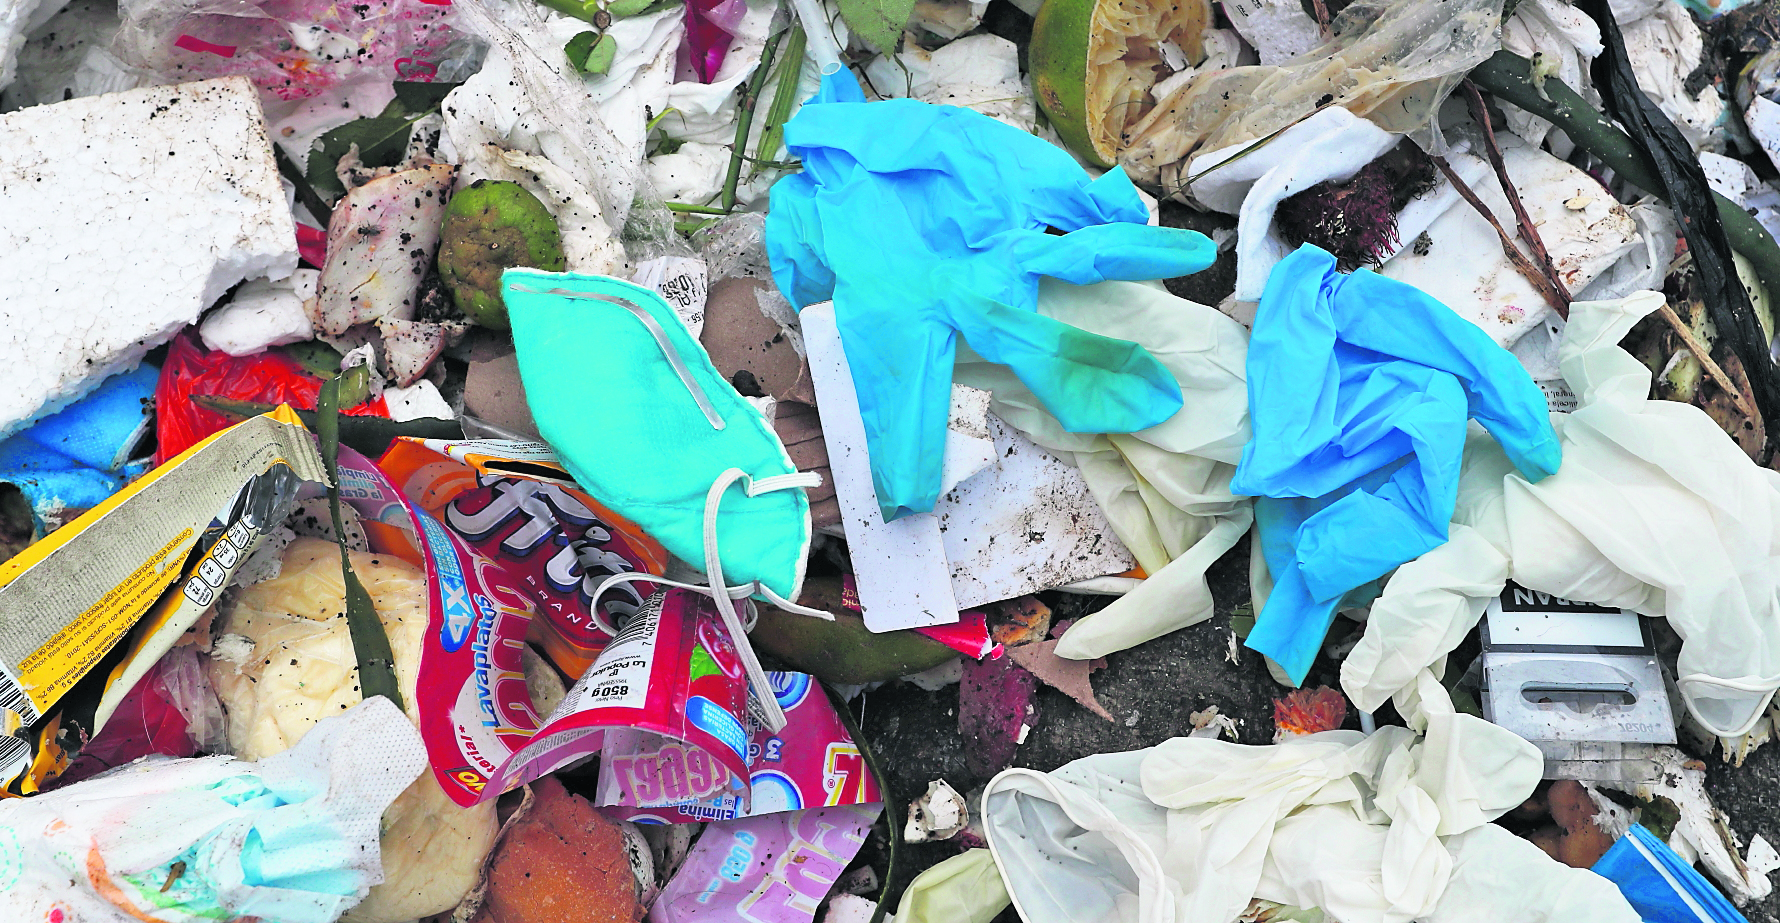 En vertederos de la ciudad se pueden observar desechos sanitarios, entre ellos mascarillas y guantes. Foto Eswin García. 